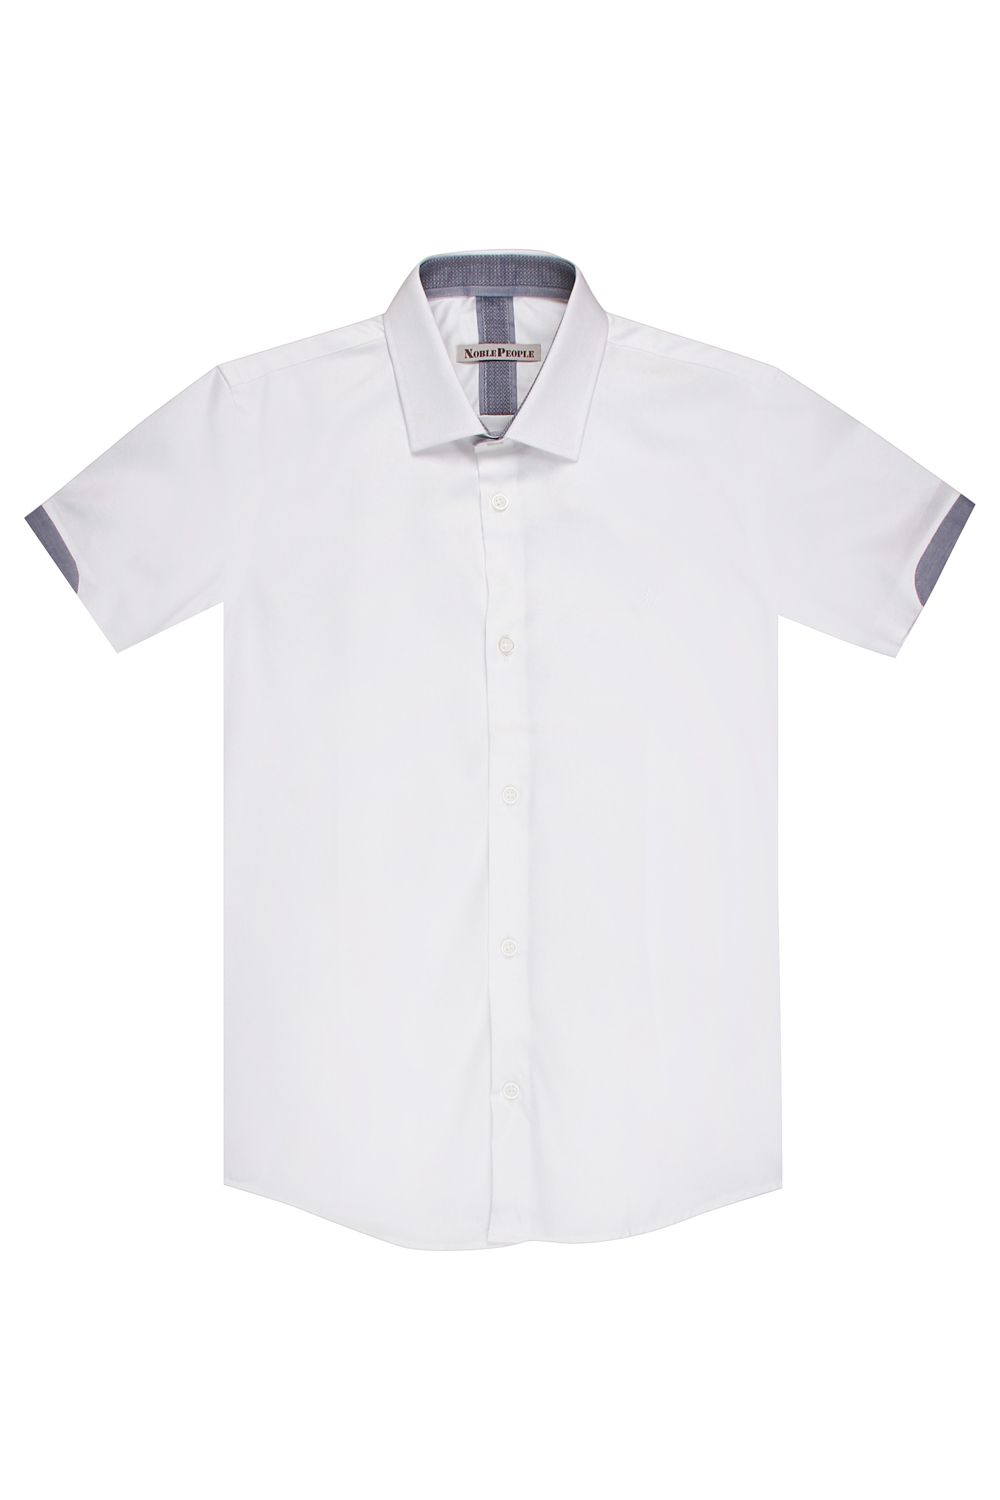 Рубашка Noble People, размер 122, цвет белый 19003-228/1 - фото 2